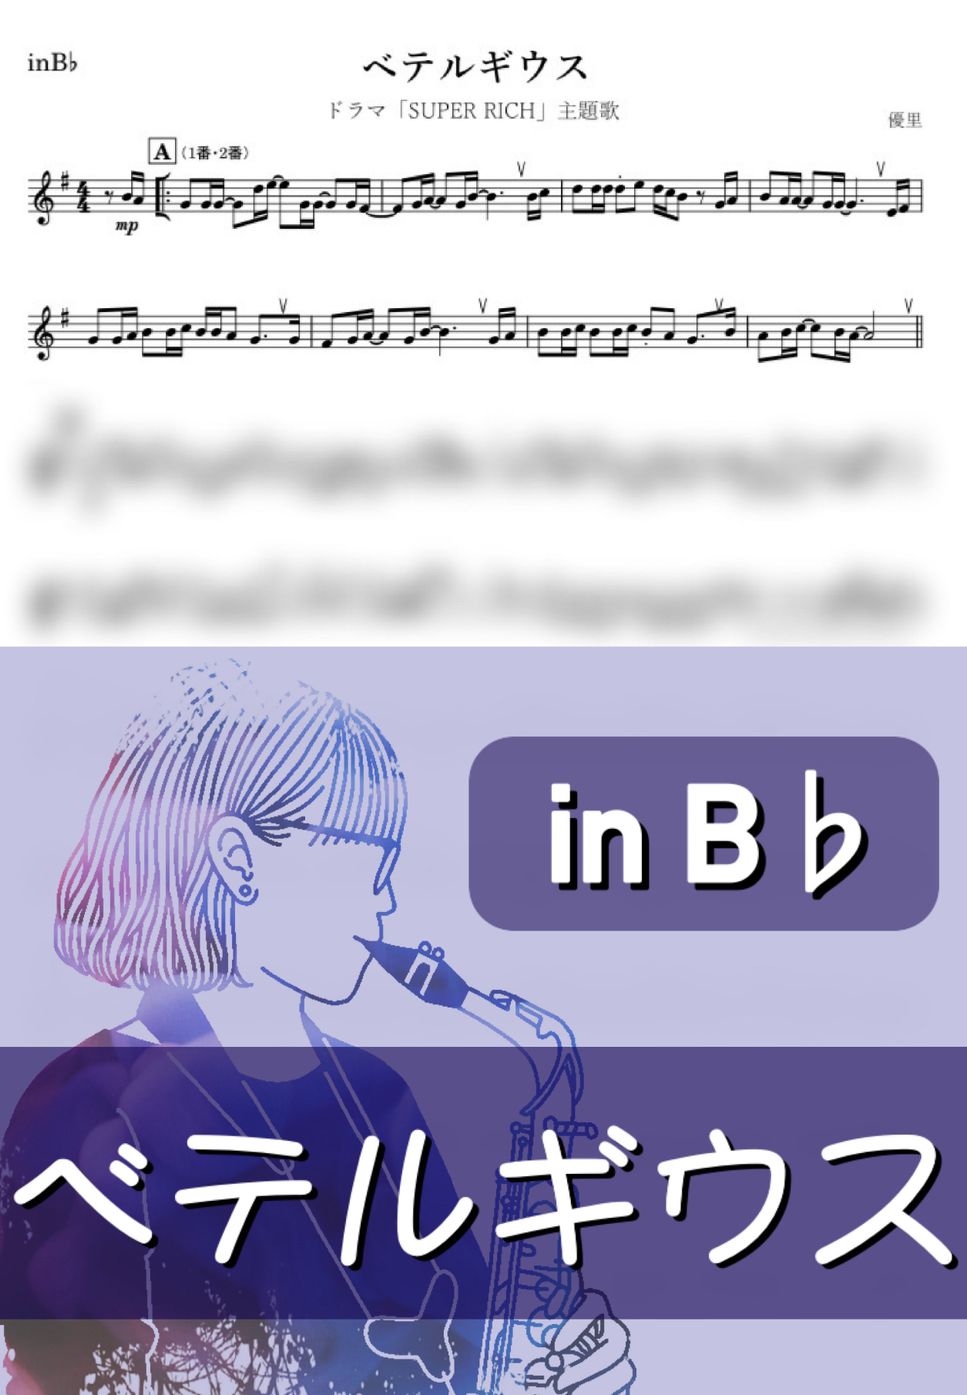 優里 - ベテルギウス (B♭) by kanamusic